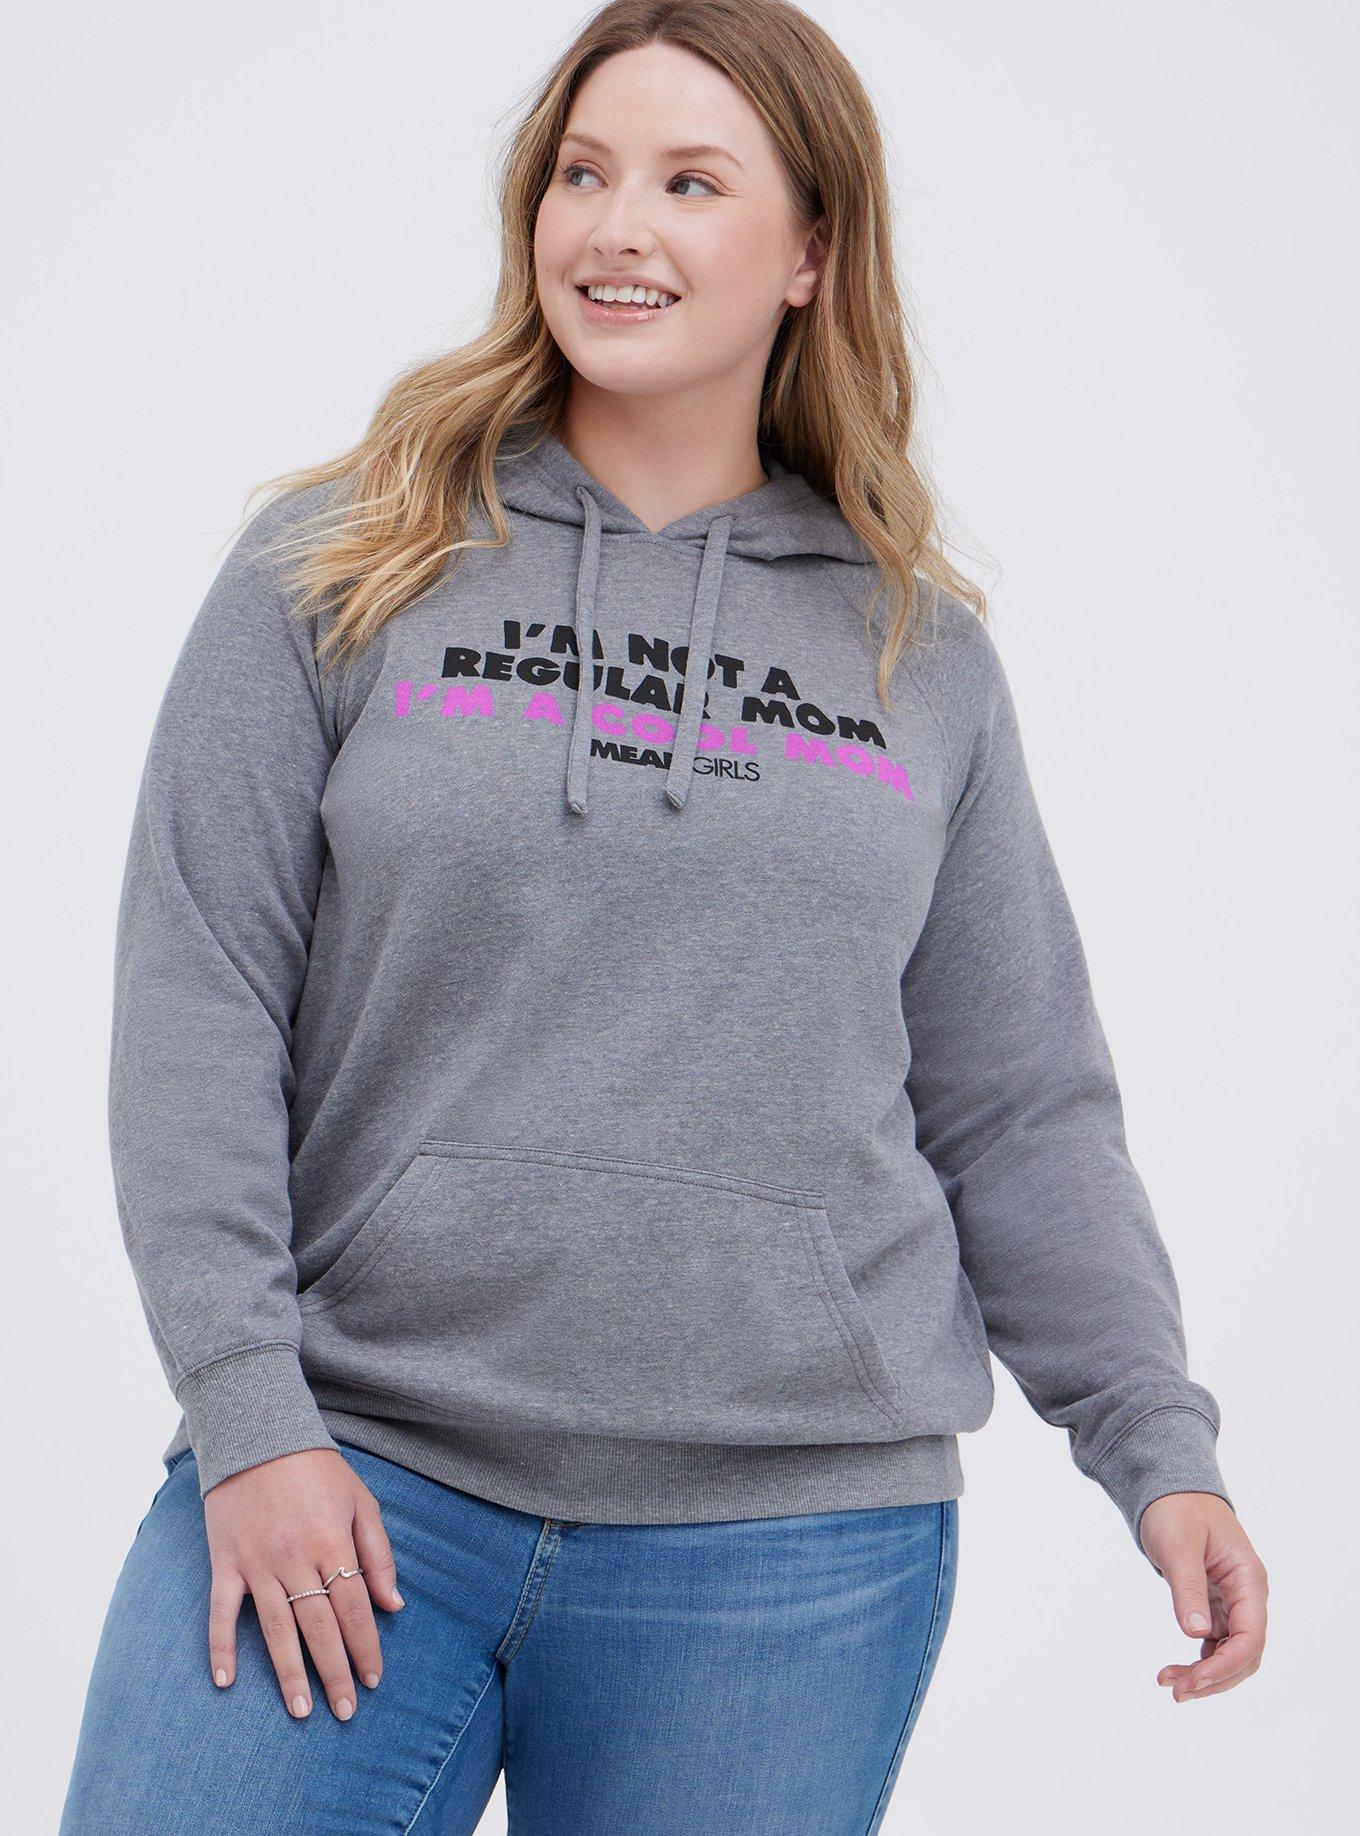 Plus Size - Mean Girls Pink Fleece Crew Sweatshirt - Torrid